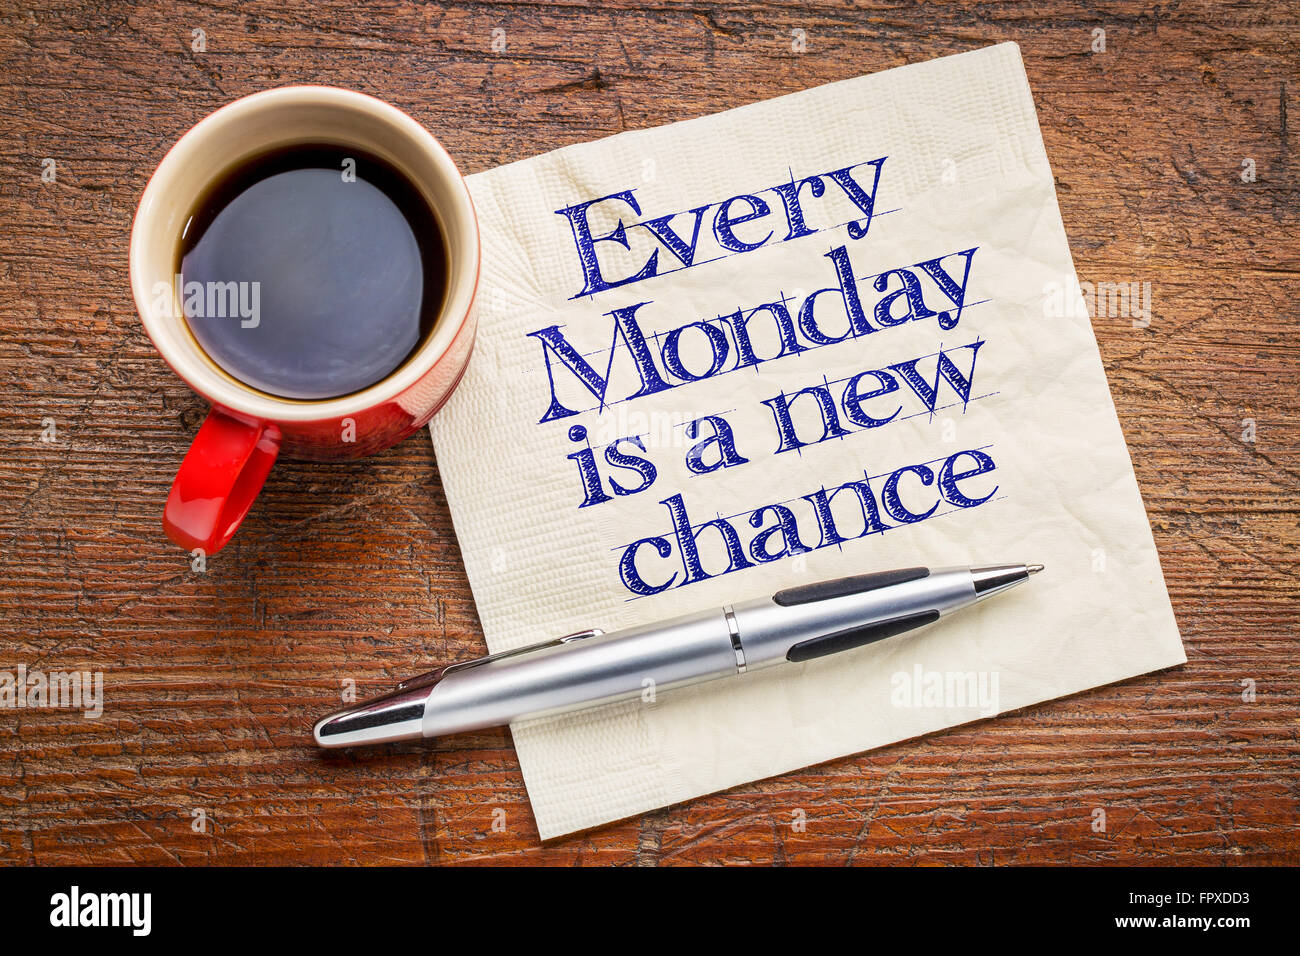 Ogni lunedì è una nuova chance - grafia motivazionale sul tovagliolo con una tazza di caffè Foto Stock